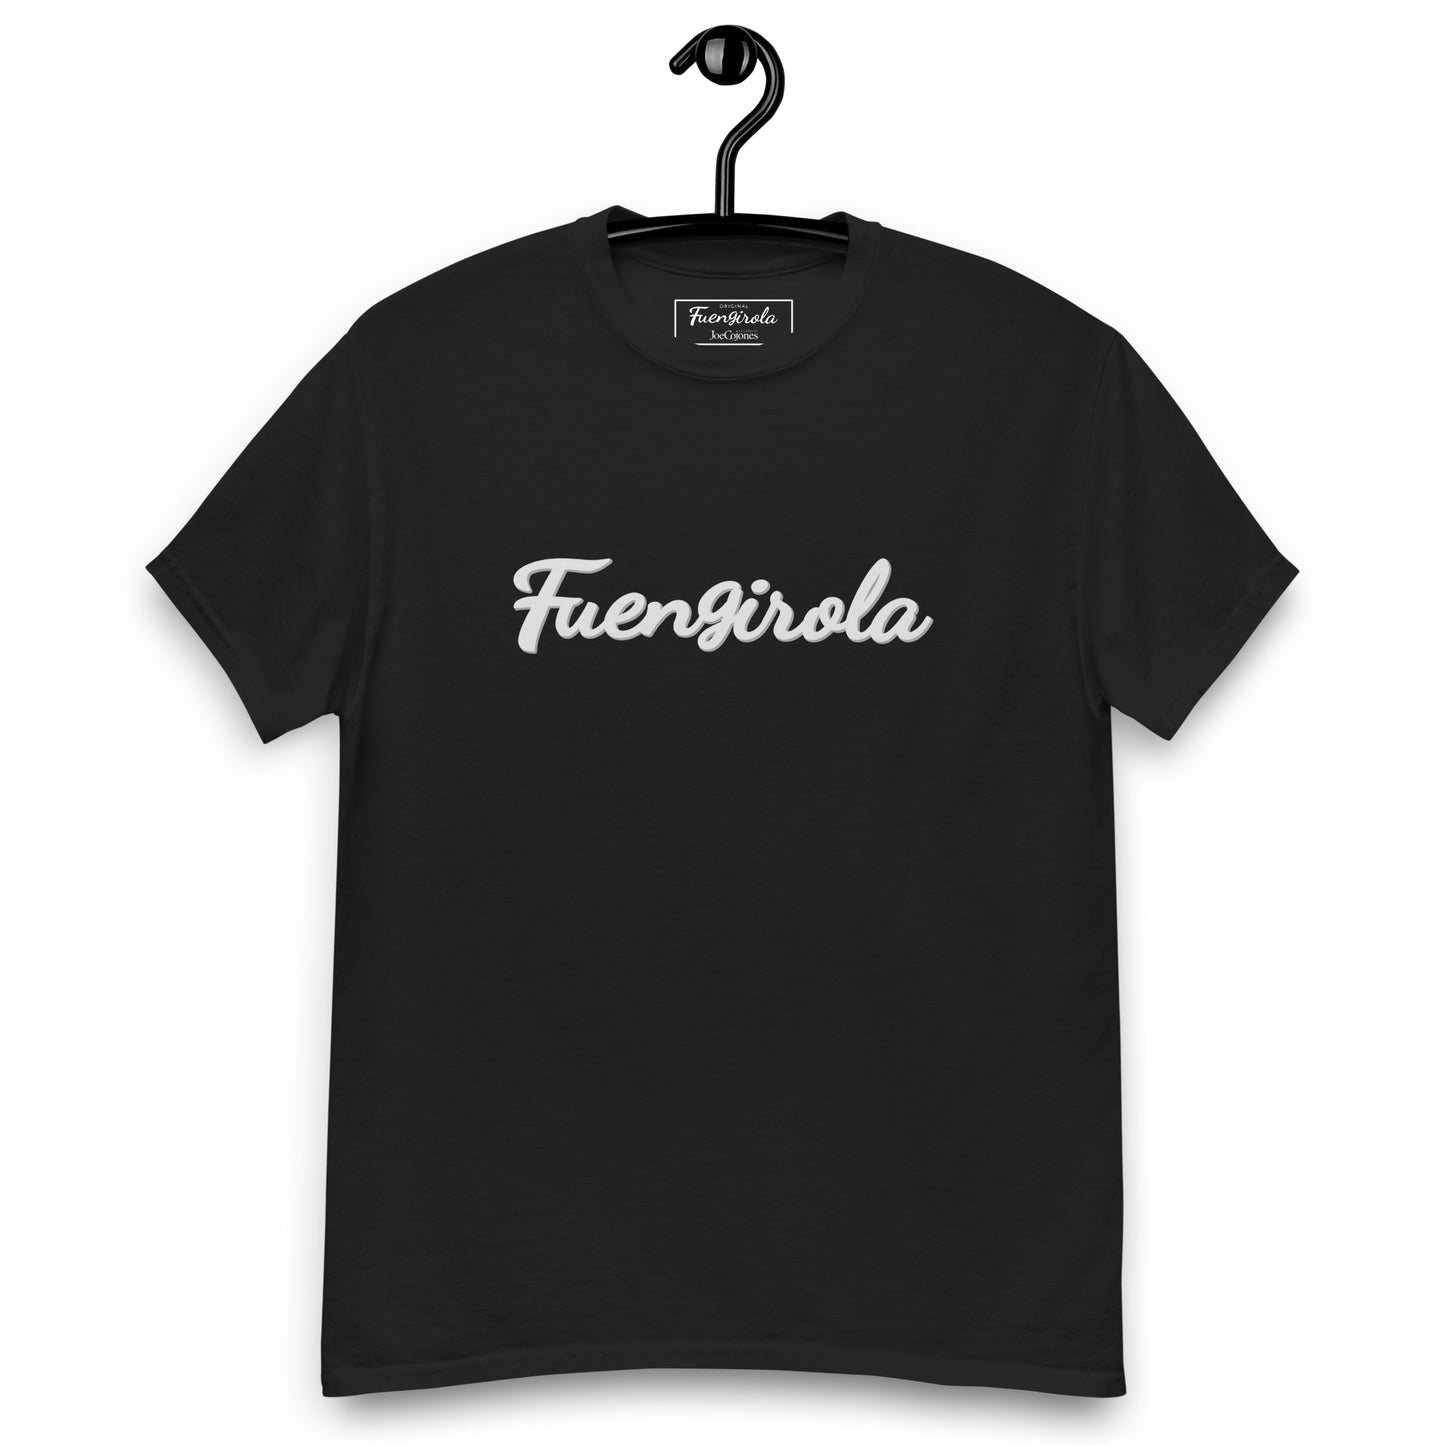 Camiseta Fuengirola Original (plata)